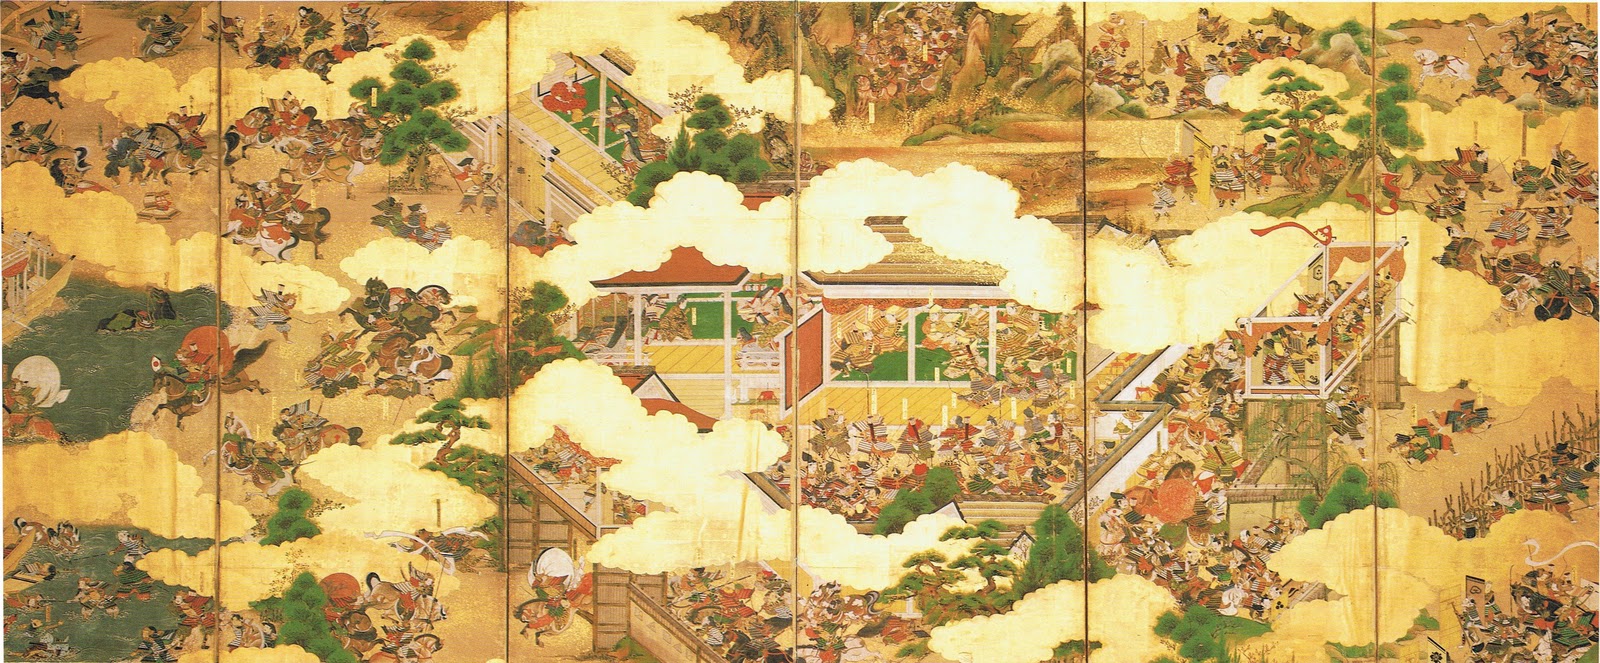 Minamoto clan | geisha world wiki | fandom powered by wikia